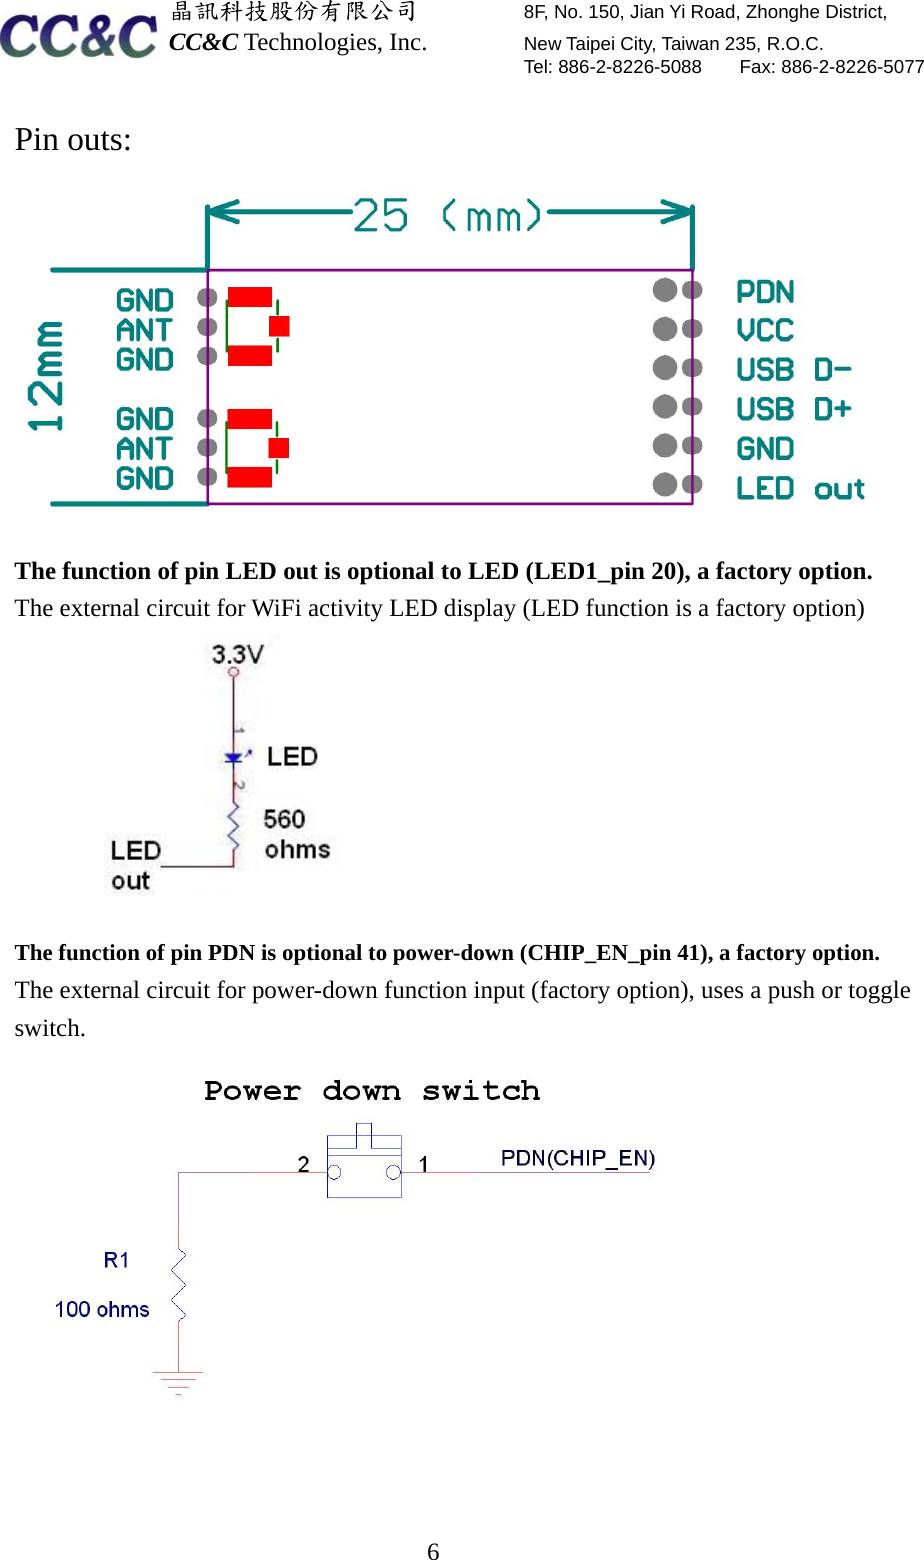  晶訊科技股份有限公司         8F, No. 150, Jian Yi Road, Zhonghe District,   CC&amp;C Technologies, Inc.        New Taipei City, Taiwan 235, R.O.C.   Tel: 886-2-8226-5088    Fax: 886-2-8226-5077  6Pin outs:  The function of pin LED out is optional to LED (LED1_pin 20), a factory option. The external circuit for WiFi activity LED display (LED function is a factory option)            The function of pin PDN is optional to power-down (CHIP_EN_pin 41), a factory option. The external circuit for power-down function input (factory option), uses a push or toggle switch.    